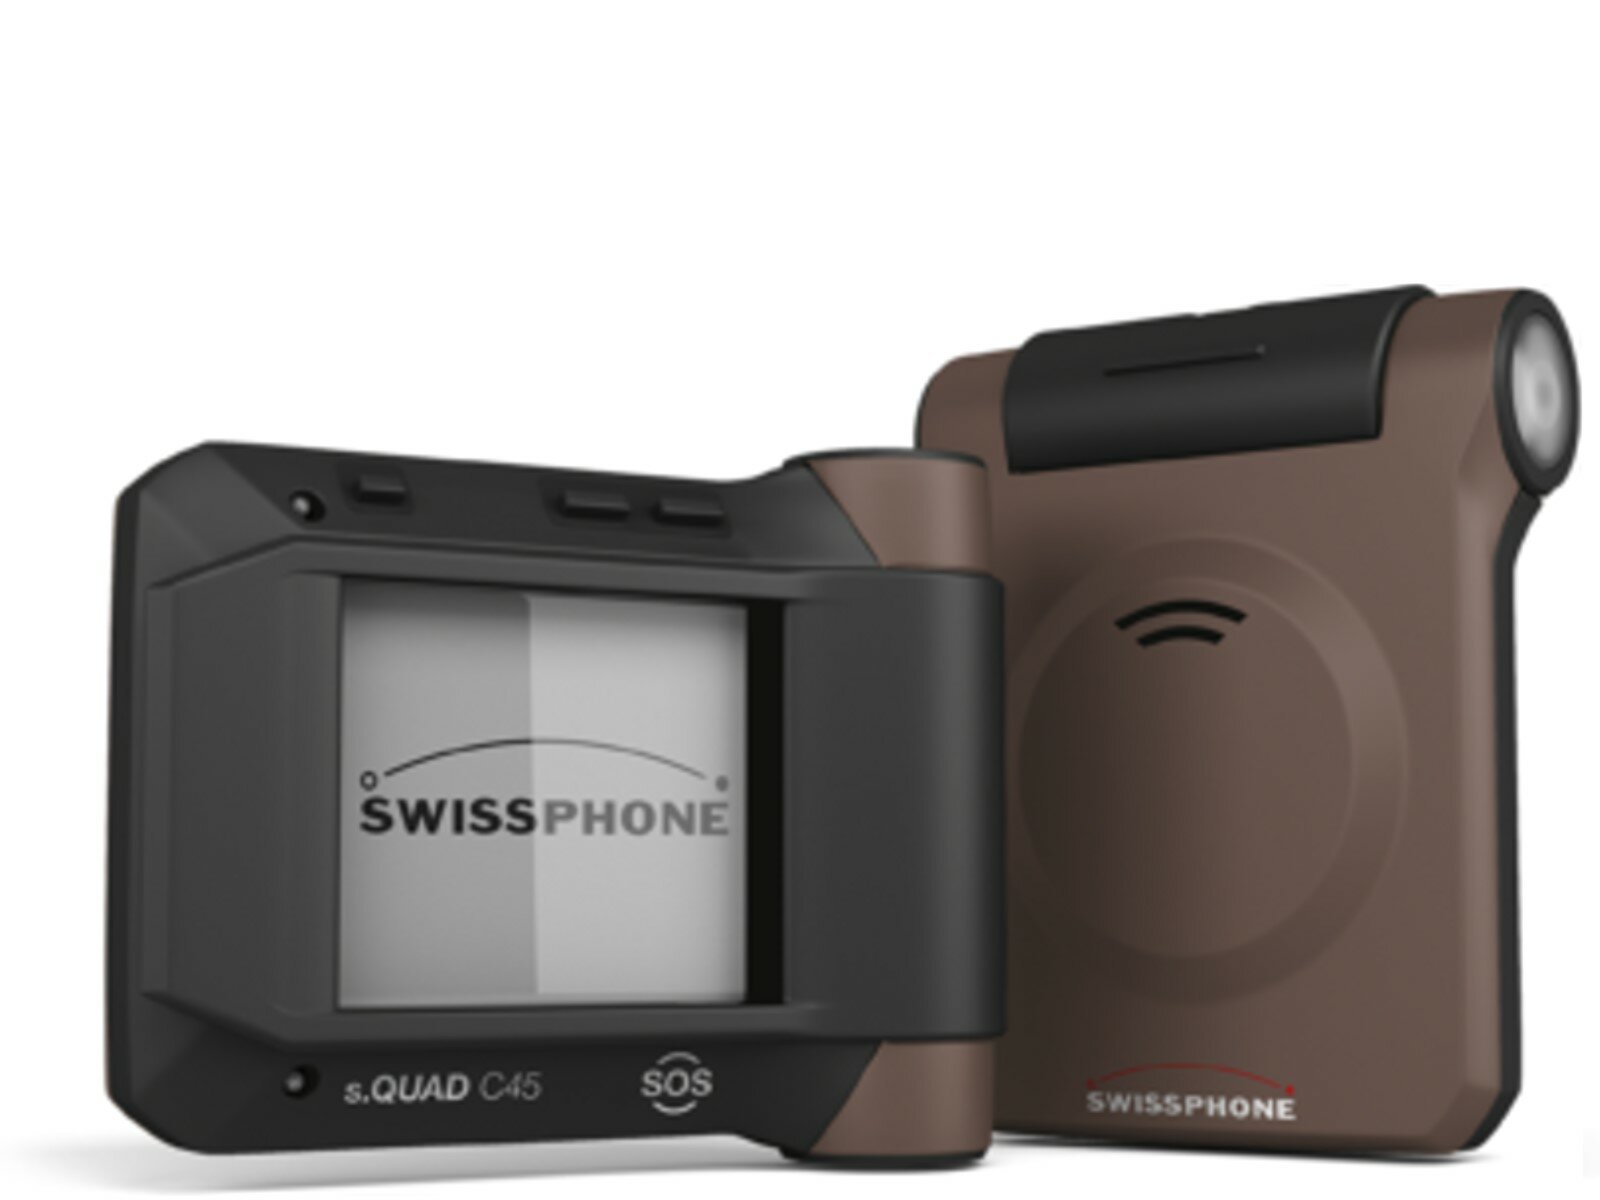 Swissphone s.QUAD C45 SOS